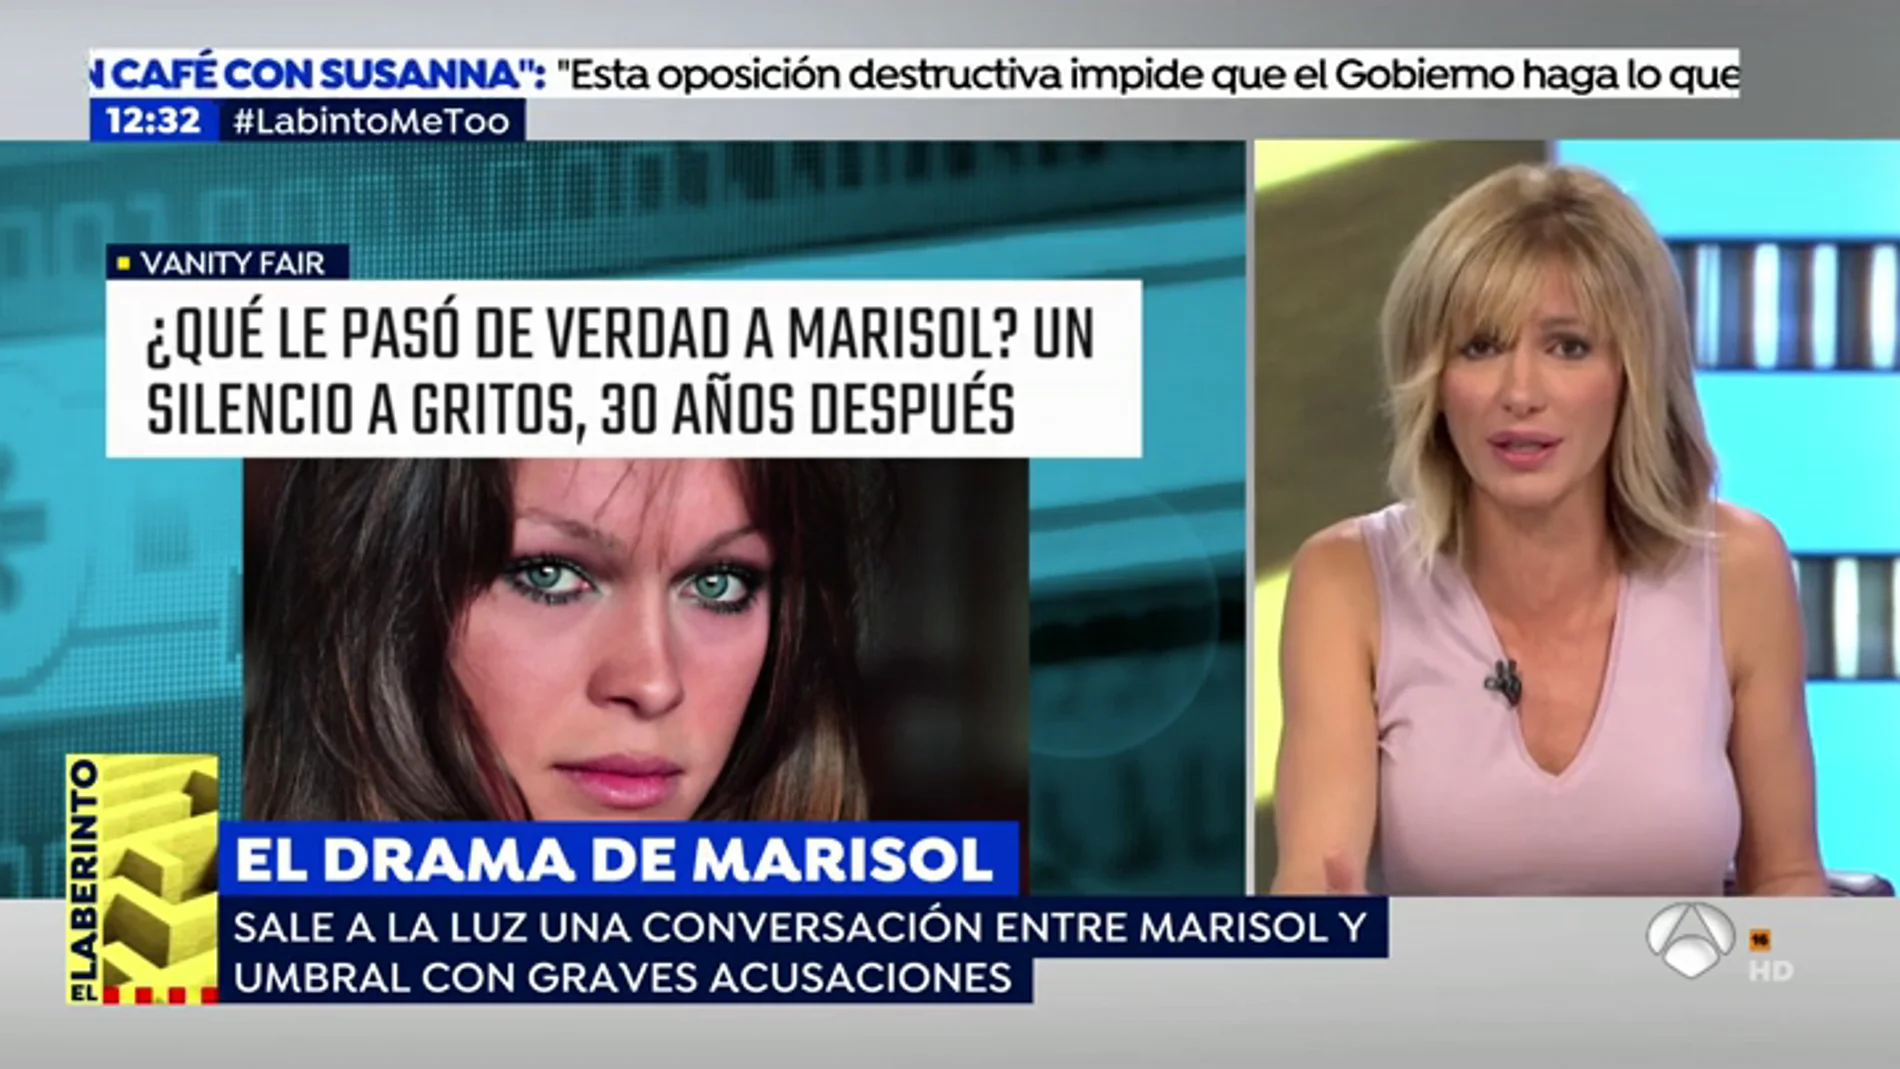 Las conversaciones de Marisol revelan abusos a menores.